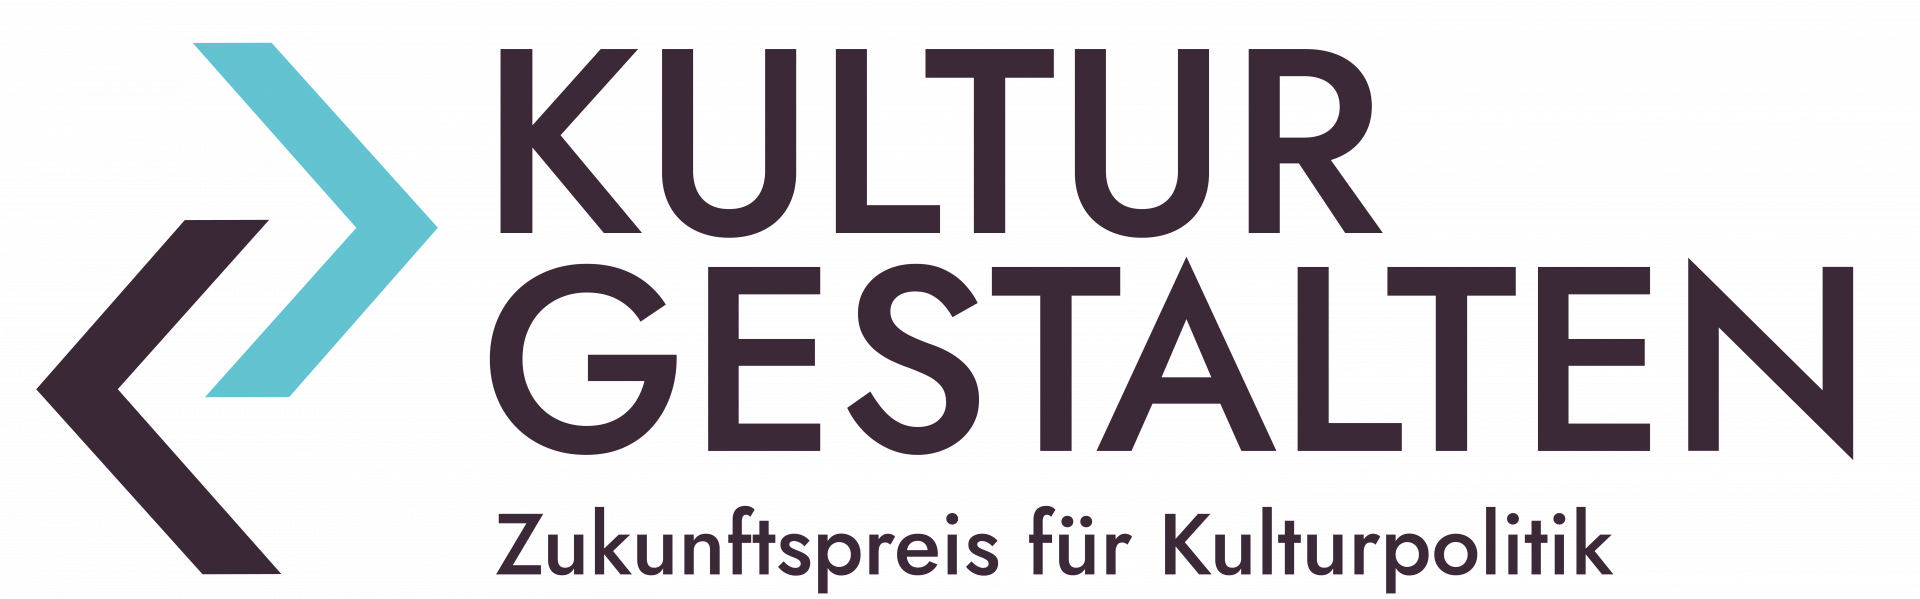 Zukunftspreis für Kulturpolitik, Bild: Kulturpolitische Gesellschaft e.V.